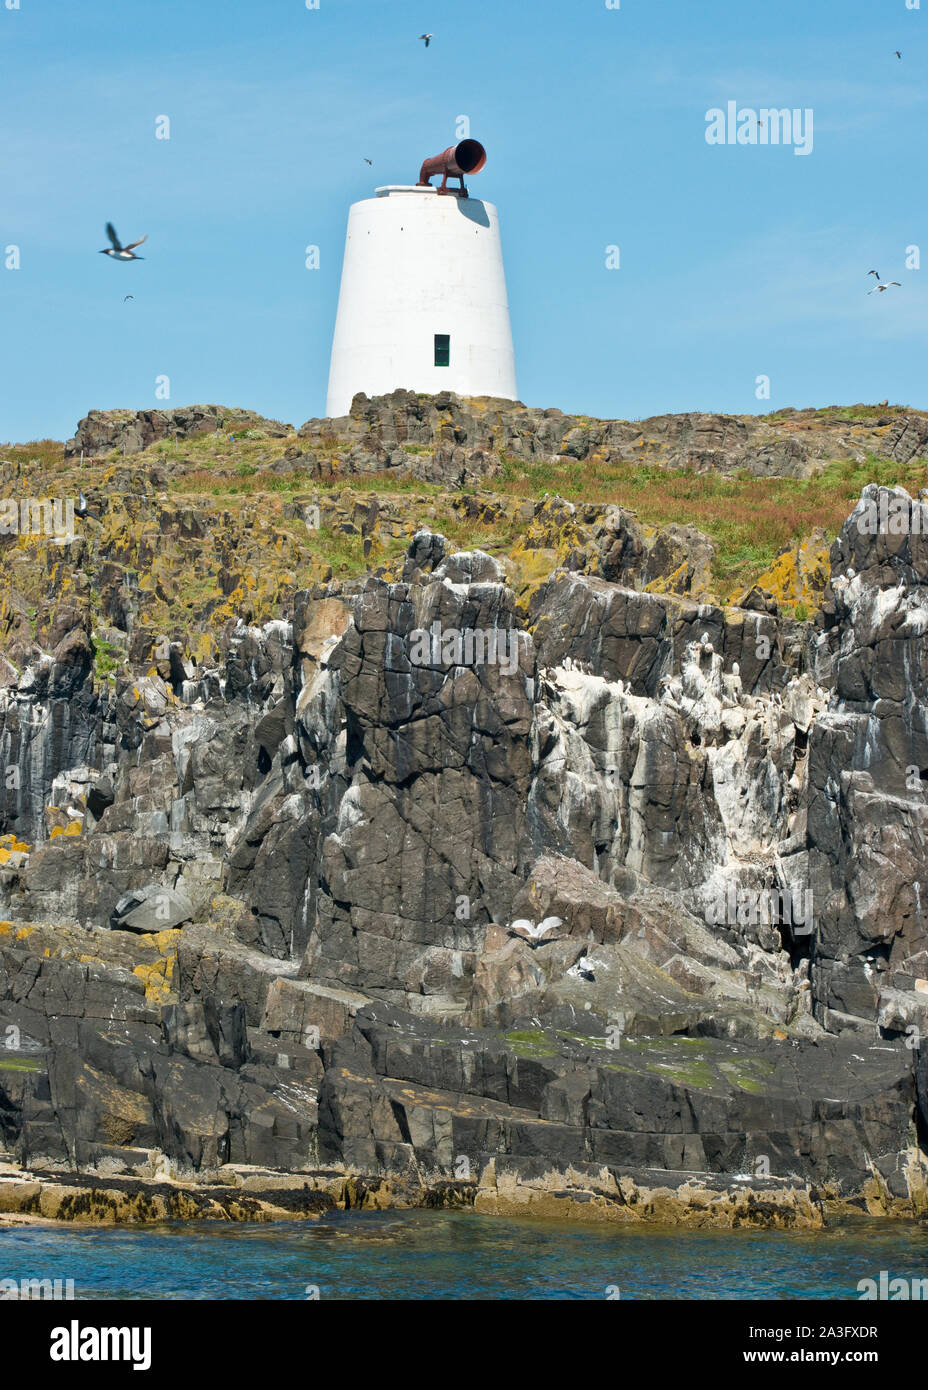 Corne de brume sur l'île de mai clifftop. Fife, Scotland Banque D'Images